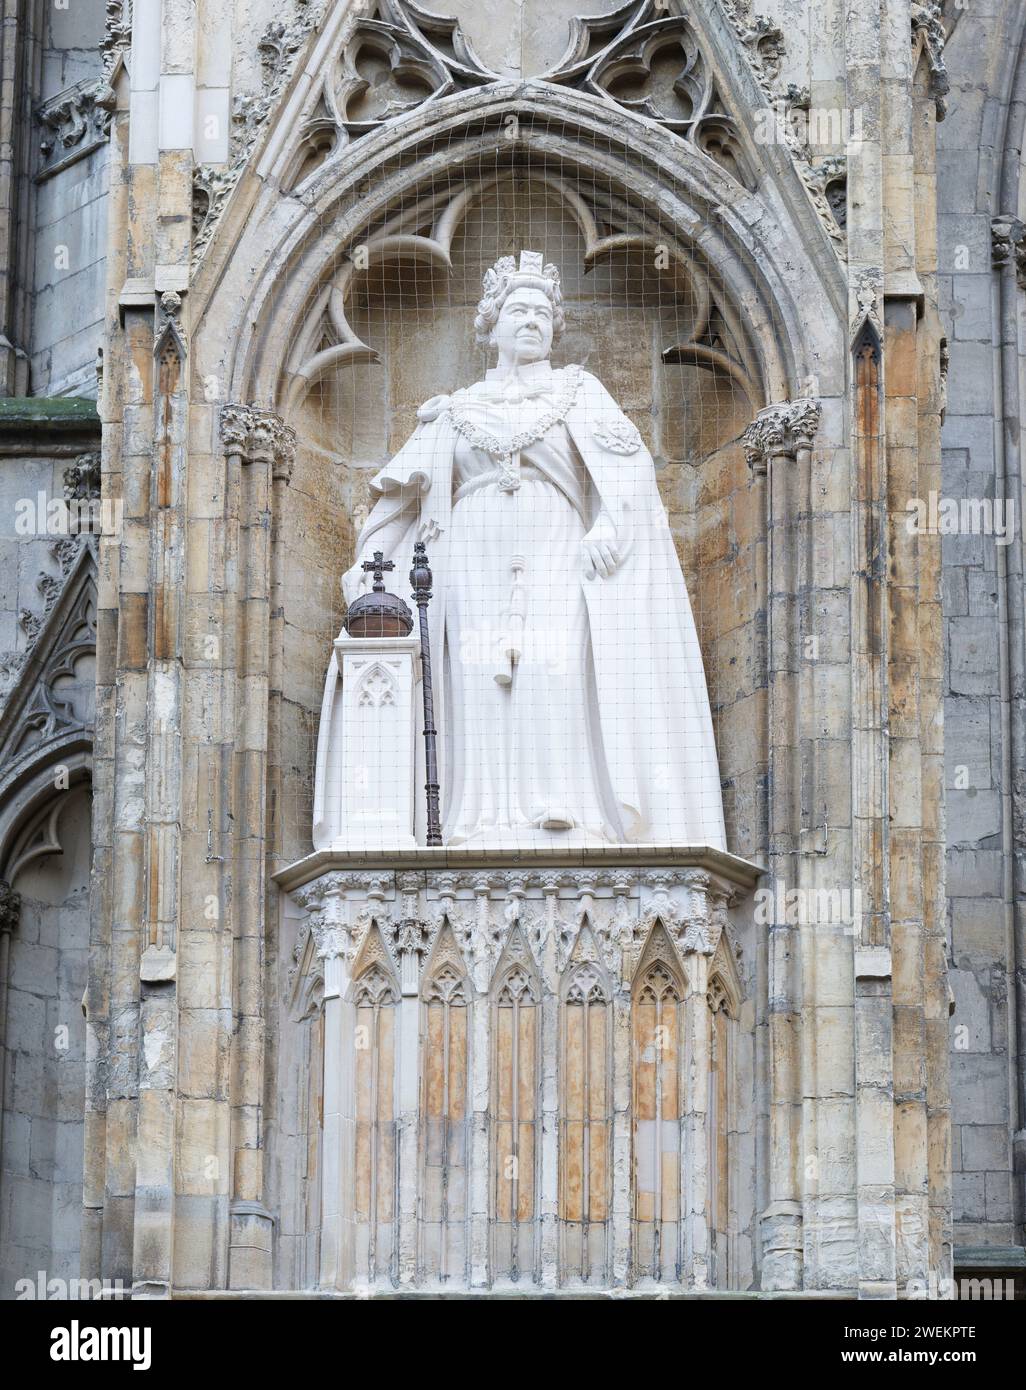 Statue, de la reine Elizabeth II, sur la façade ouest de la cathédrale chrétienne à York, en Angleterre. Banque D'Images